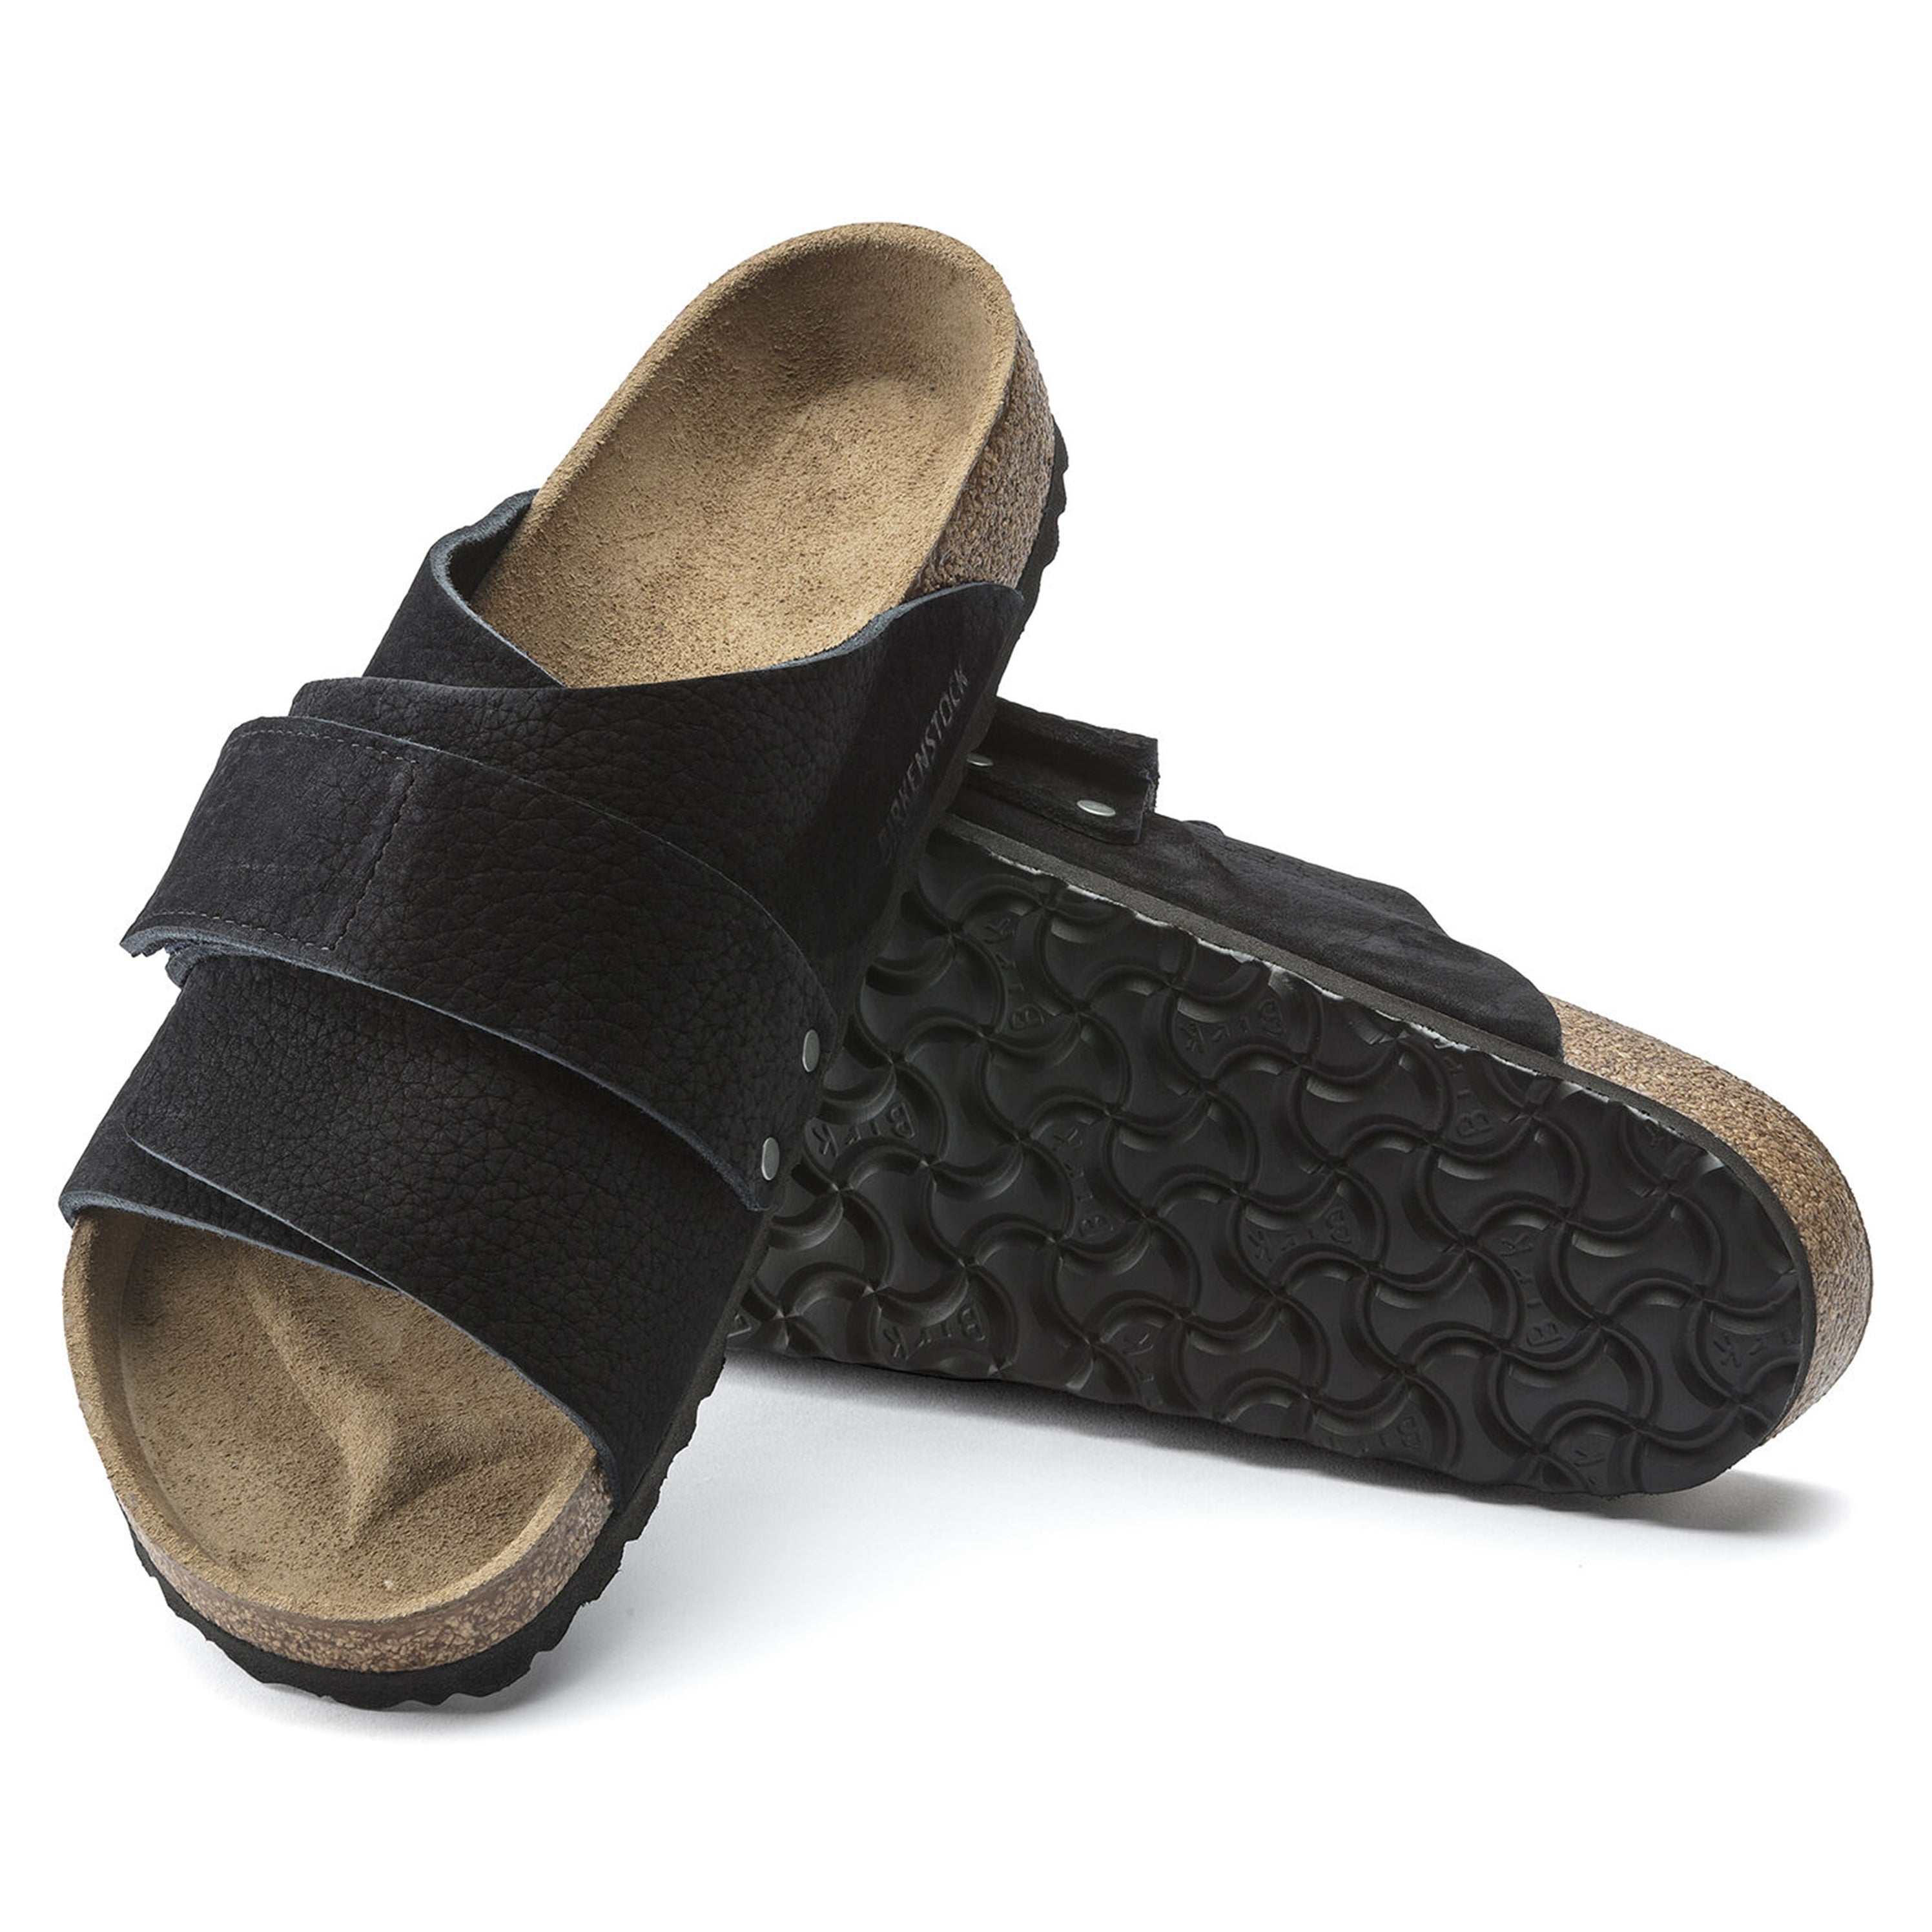 Birkenstock Kyoto Sandals - Desert Buck Black Nubuck